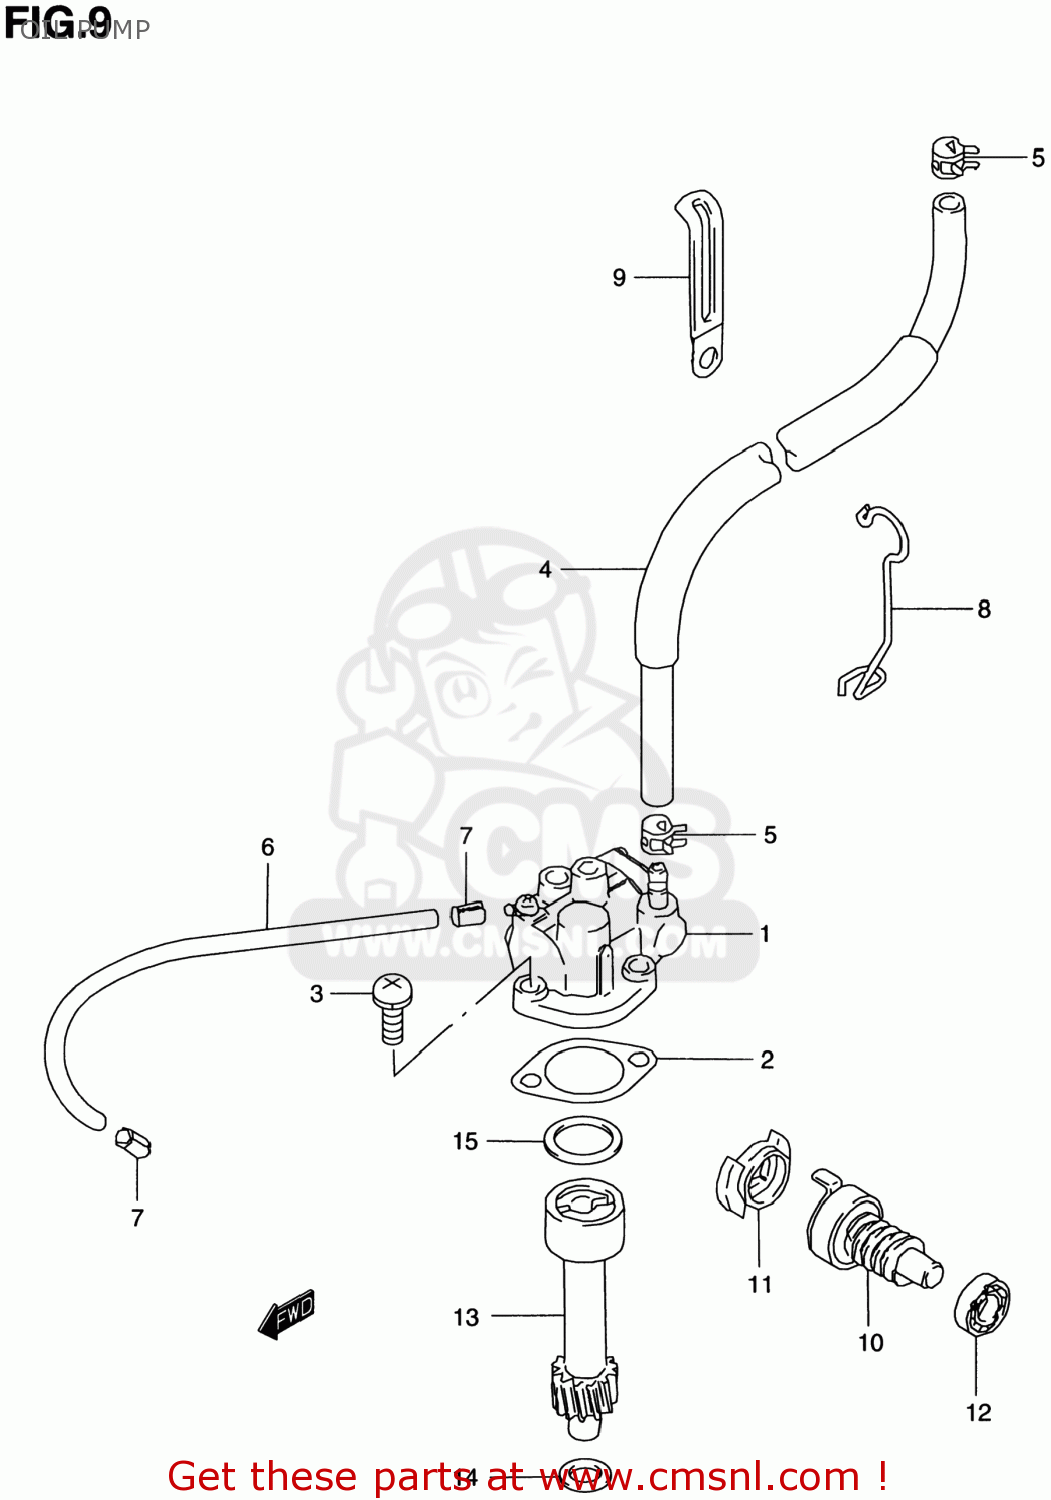 suzuki gs500 wiring diagram - Wiring Diagram